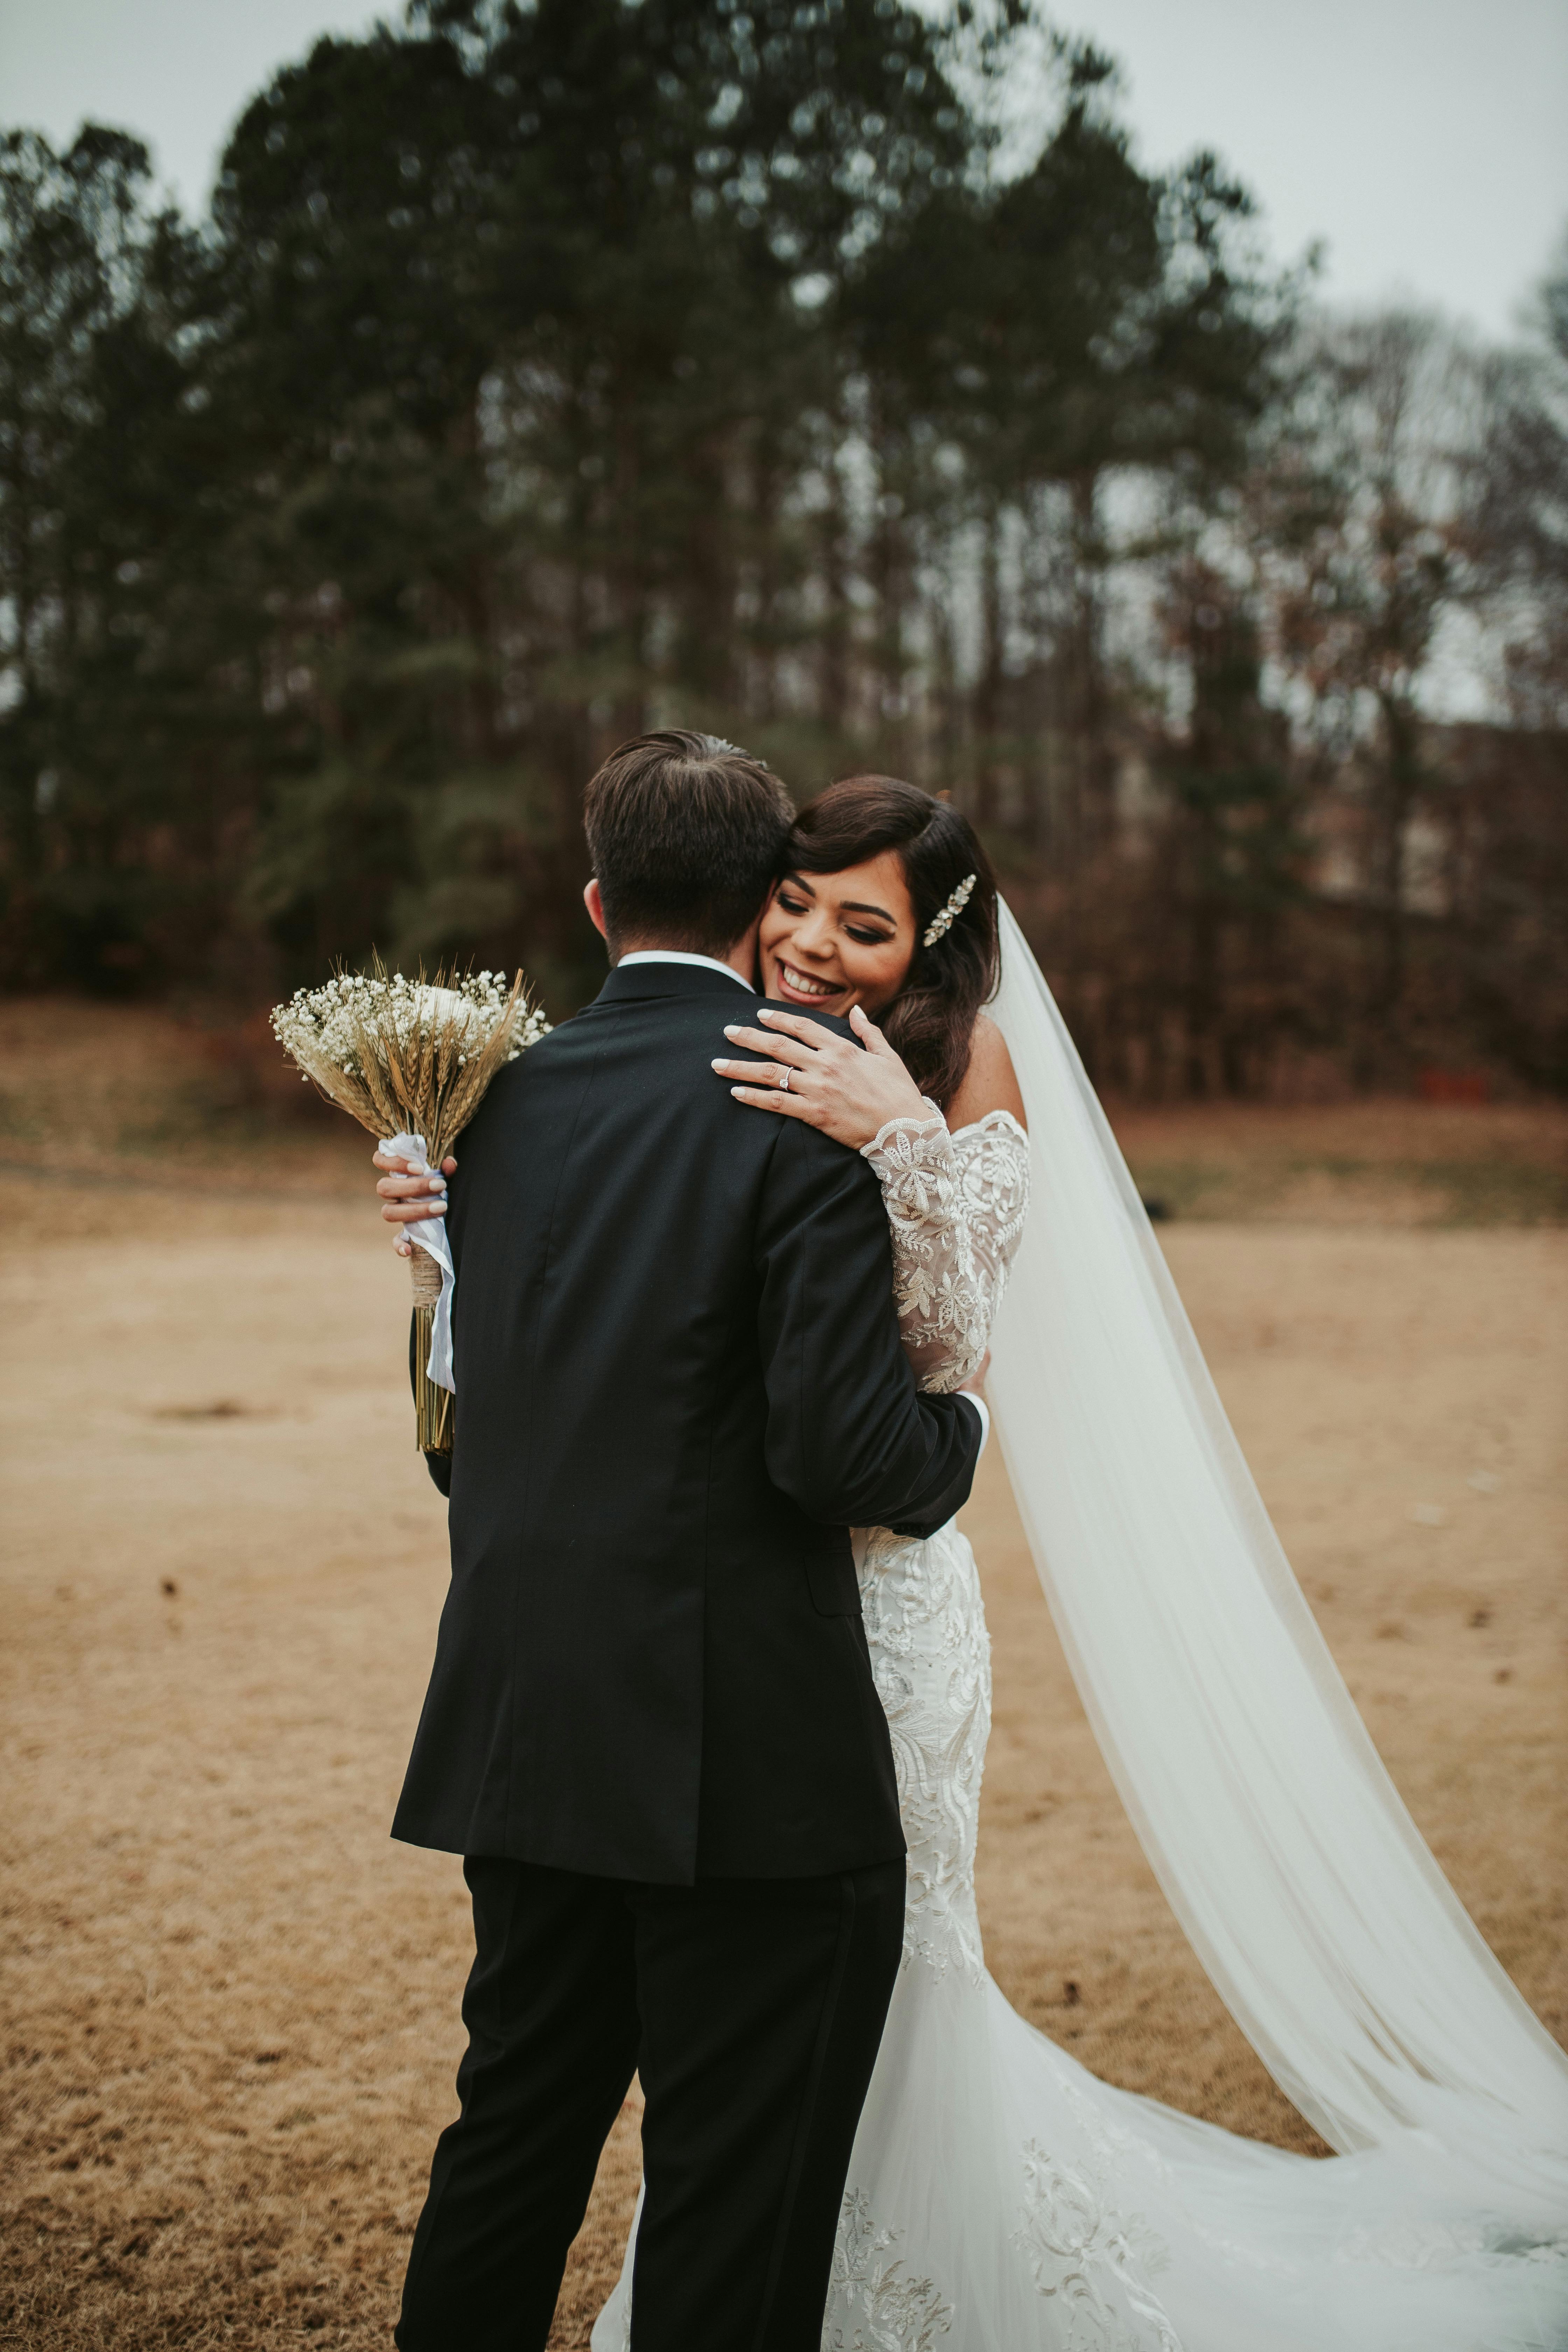 Pareja de recién casados abrazándose | Foto: Pexels